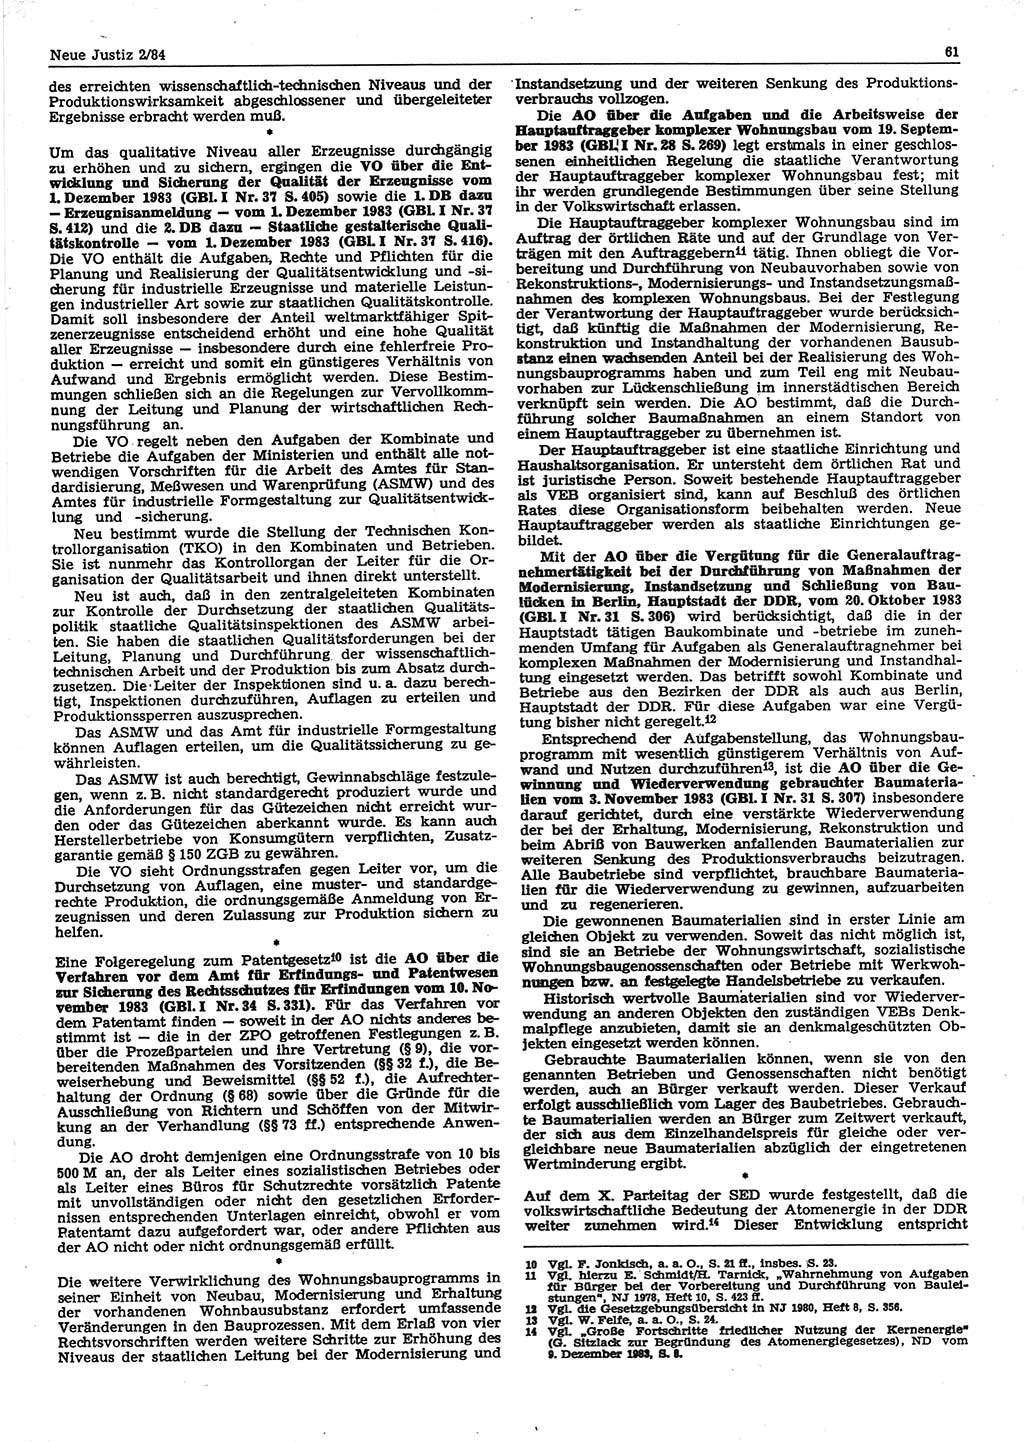 Neue Justiz (NJ), Zeitschrift für sozialistisches Recht und Gesetzlichkeit [Deutsche Demokratische Republik (DDR)], 38. Jahrgang 1984, Seite 61 (NJ DDR 1984, S. 61)